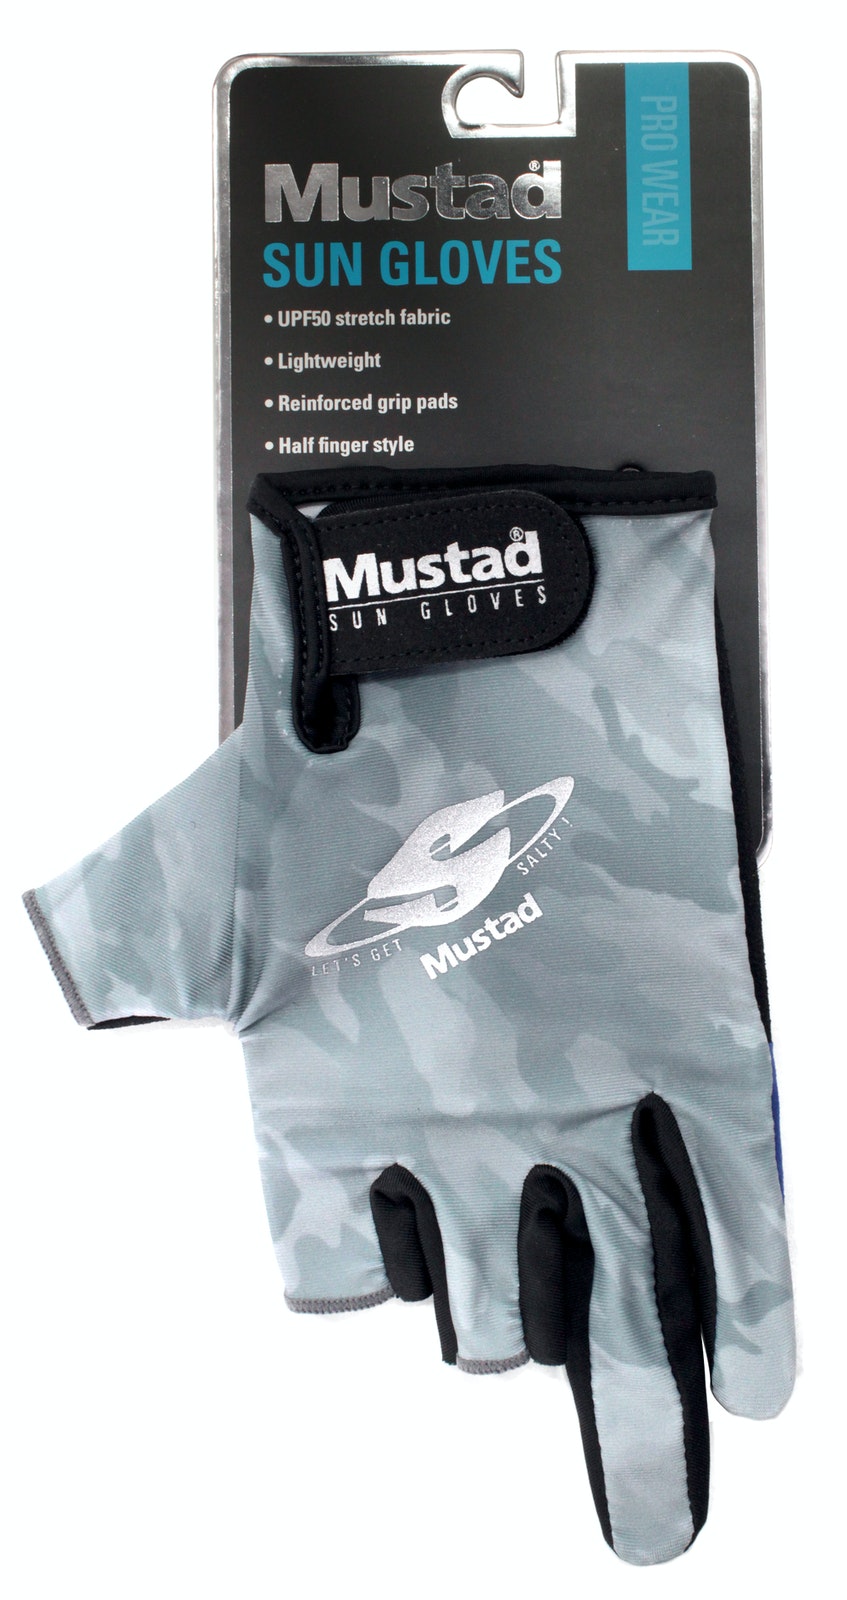 Mustad Fish Camo Tournament Sun Protector Multi Tube - UPF 30 Head Scarf